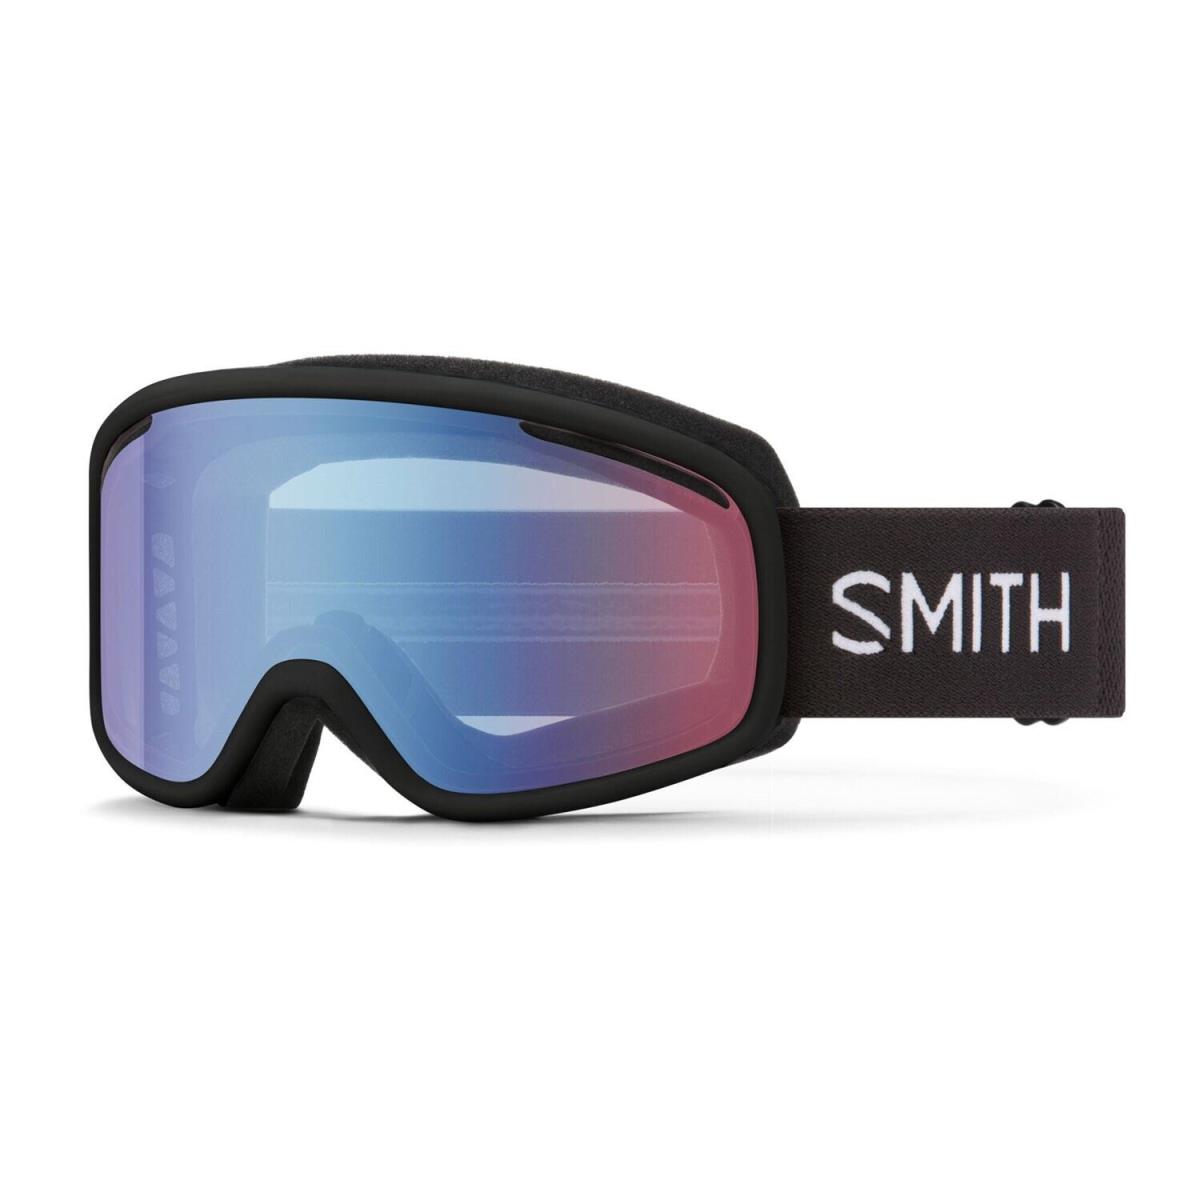 Smith Vogue Ski / Snow Goggles Black Frame Blue Sensor Mirror Lens